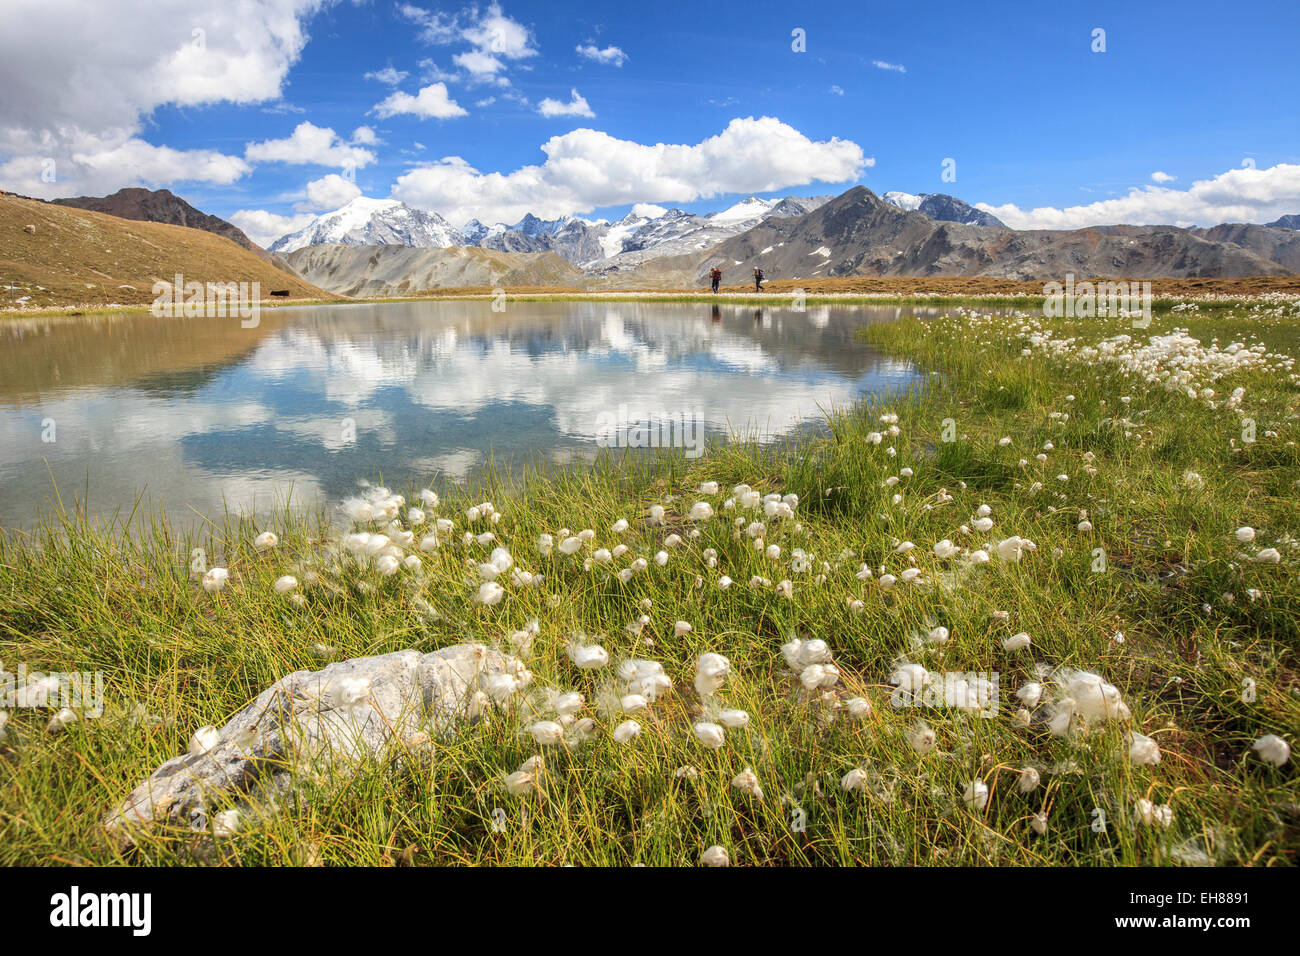 (Eriophorum Cottongrass) florece en las orillas del Lago D'Oro y el lago Umbrail en Valtellina, Lombardía, Italia, Europa Foto de stock